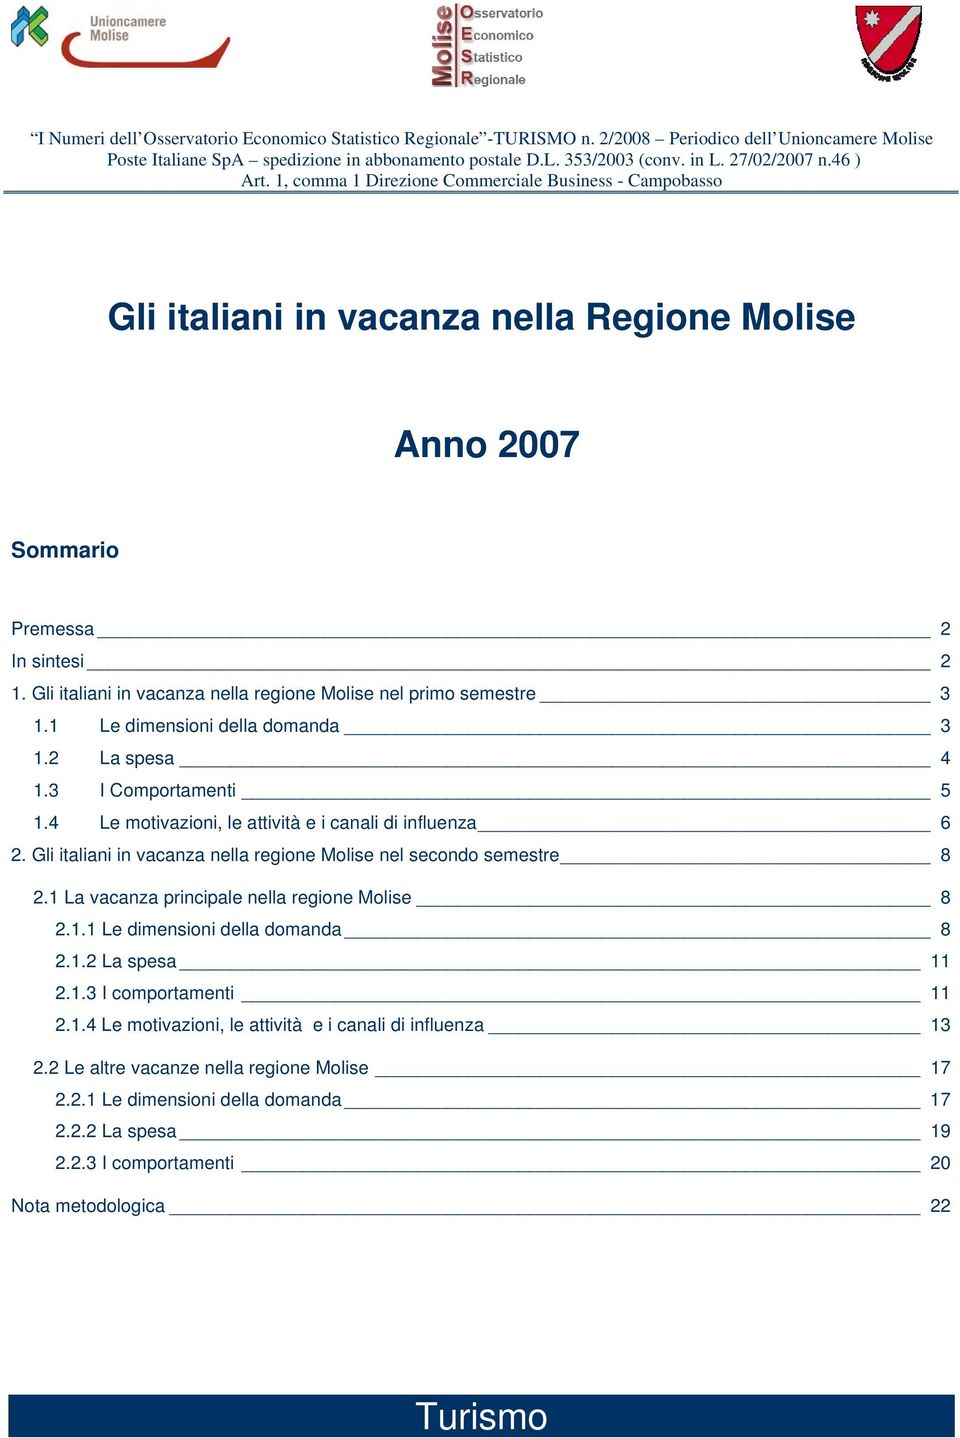 Gli italiani in vacanza nella regione Molise nel primo semestre 3 1.1 Le dimensioni della domanda 3 1.2 La spesa 4 1.3 I Comportamenti 5 1.4 Le motivazioni, le attività e i canali di influenza 6 2.